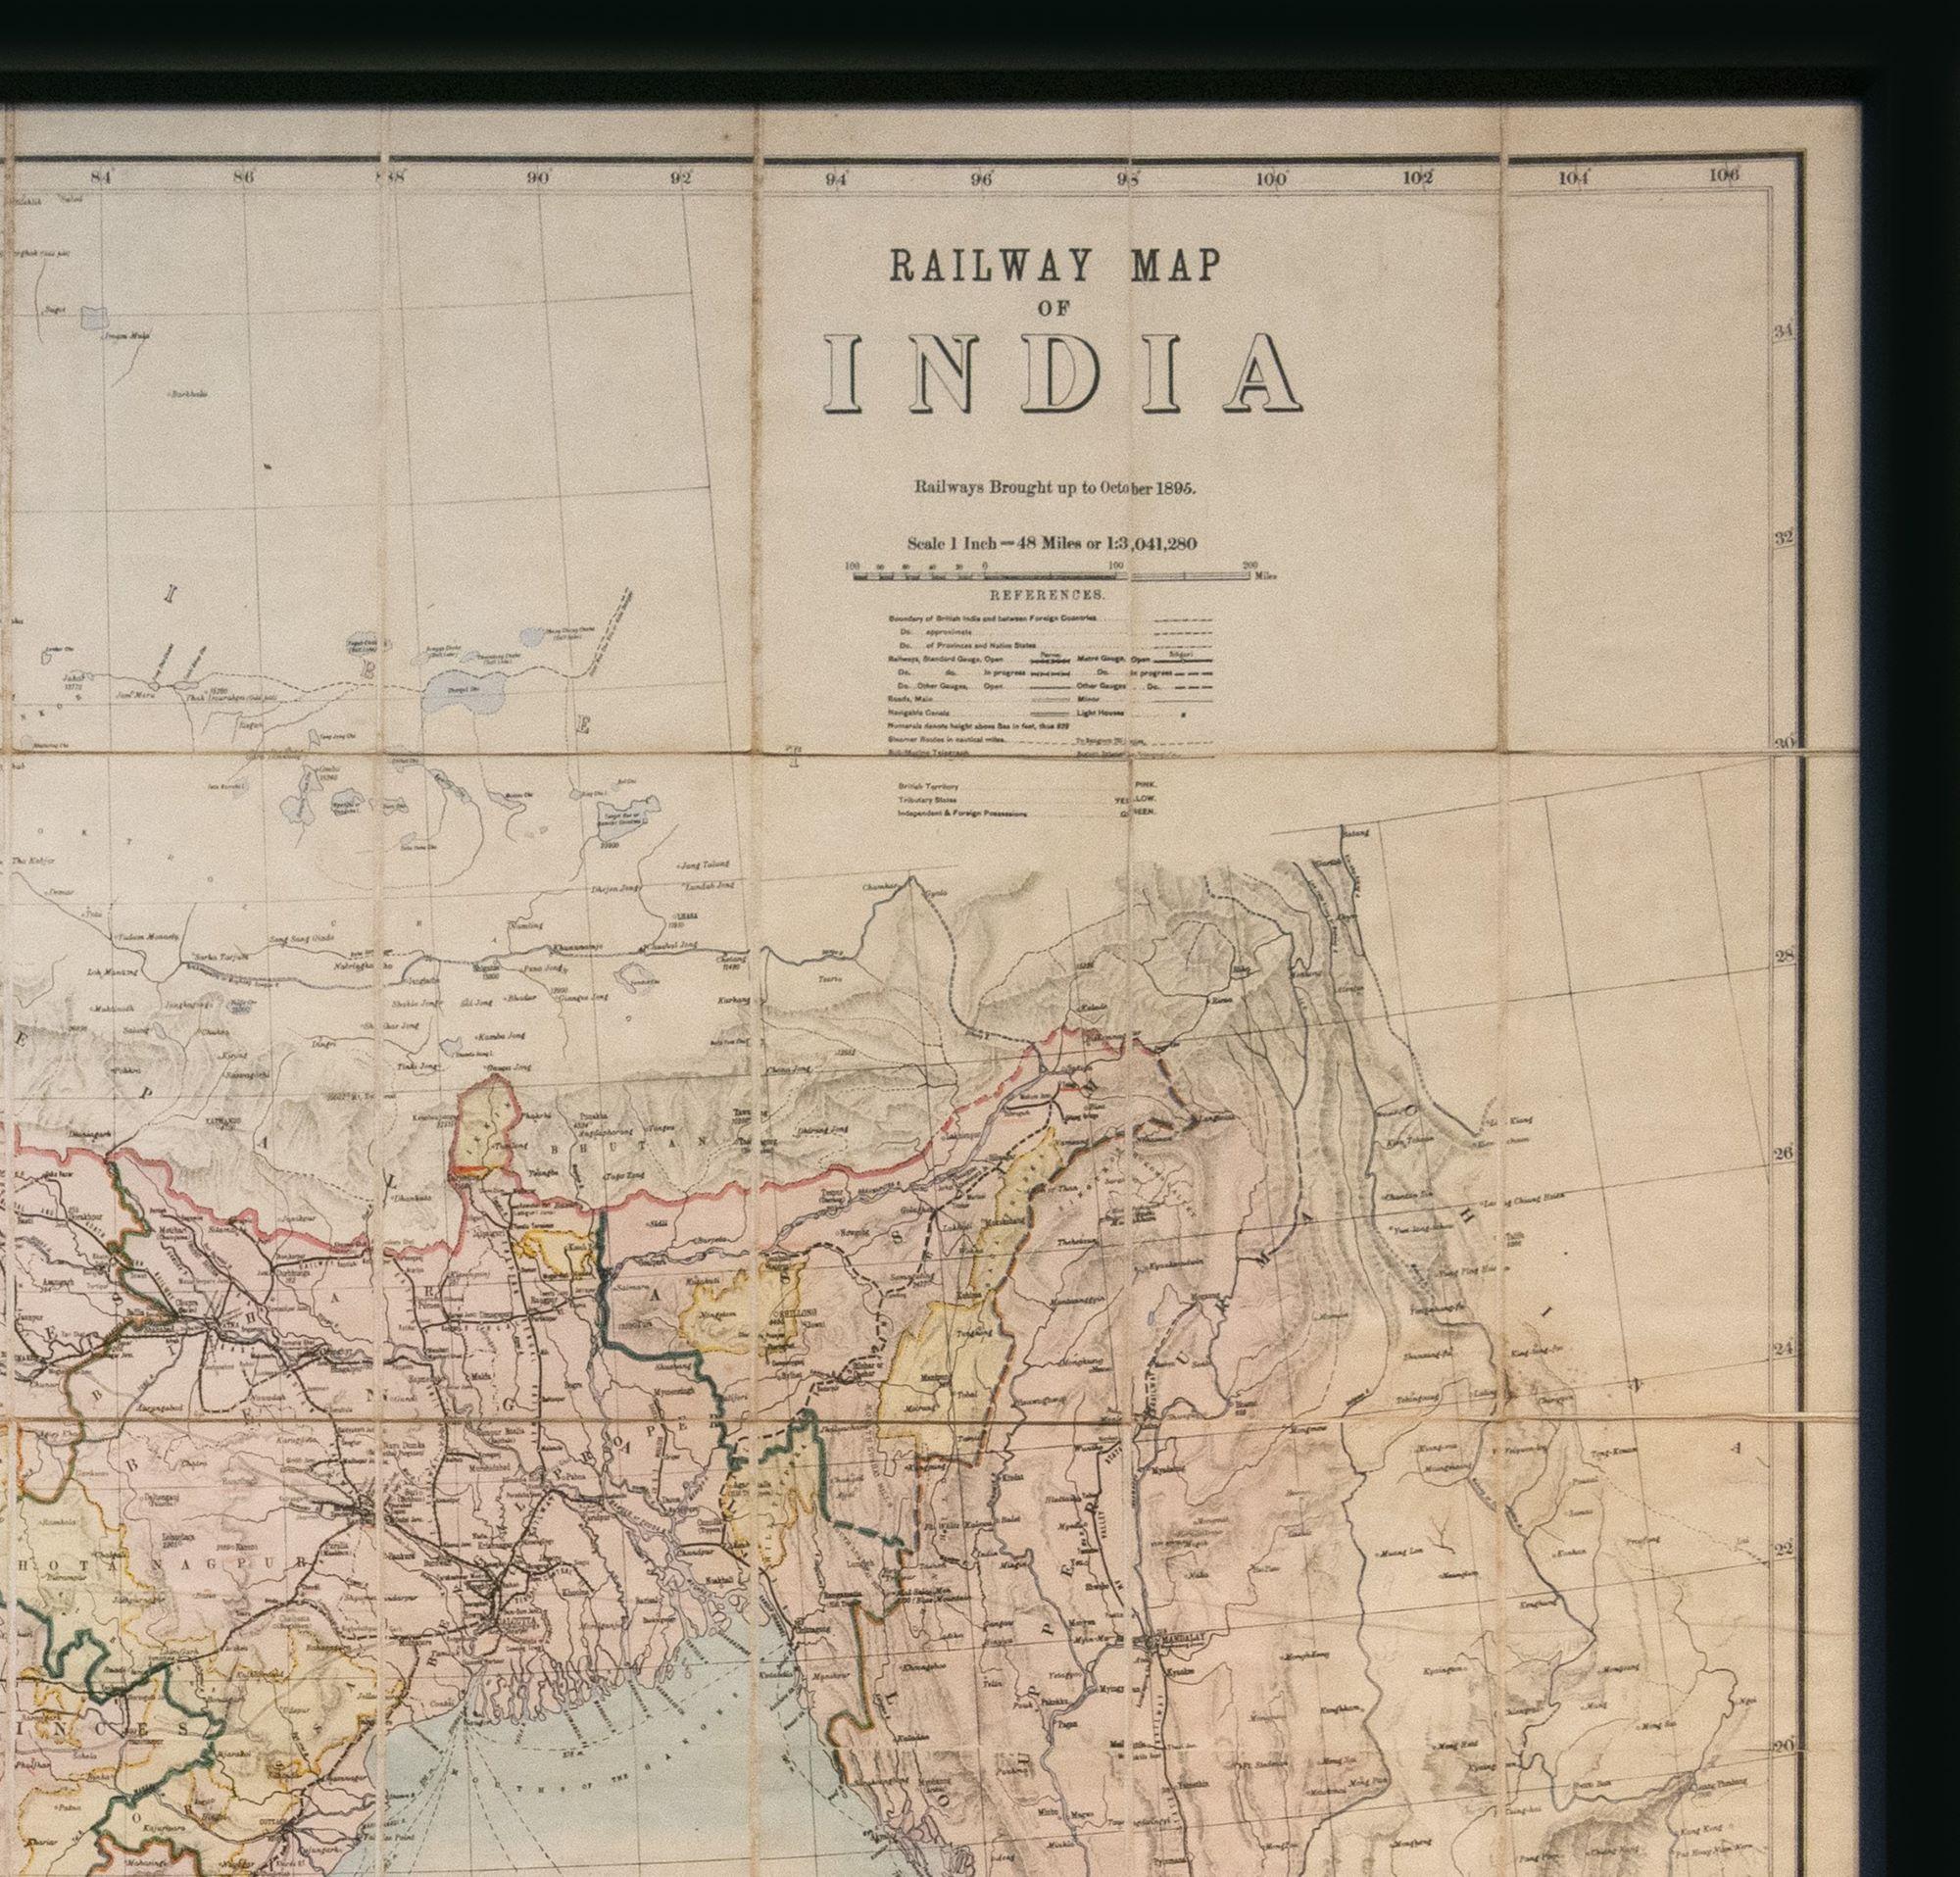 THUILLIER, Oberst Henry Ravenshaw.

Eisenbahnkarte von Indien. Bis Oktober 1895 eingeführte Eisenbahnen. Maßstab 1 Zoll = 48 Meilen oder 1:3.041.280.
(Kalkutta), veröffentlicht unter der Leitung von Oberst H. Thuillier, R.E., Generalinspektor von